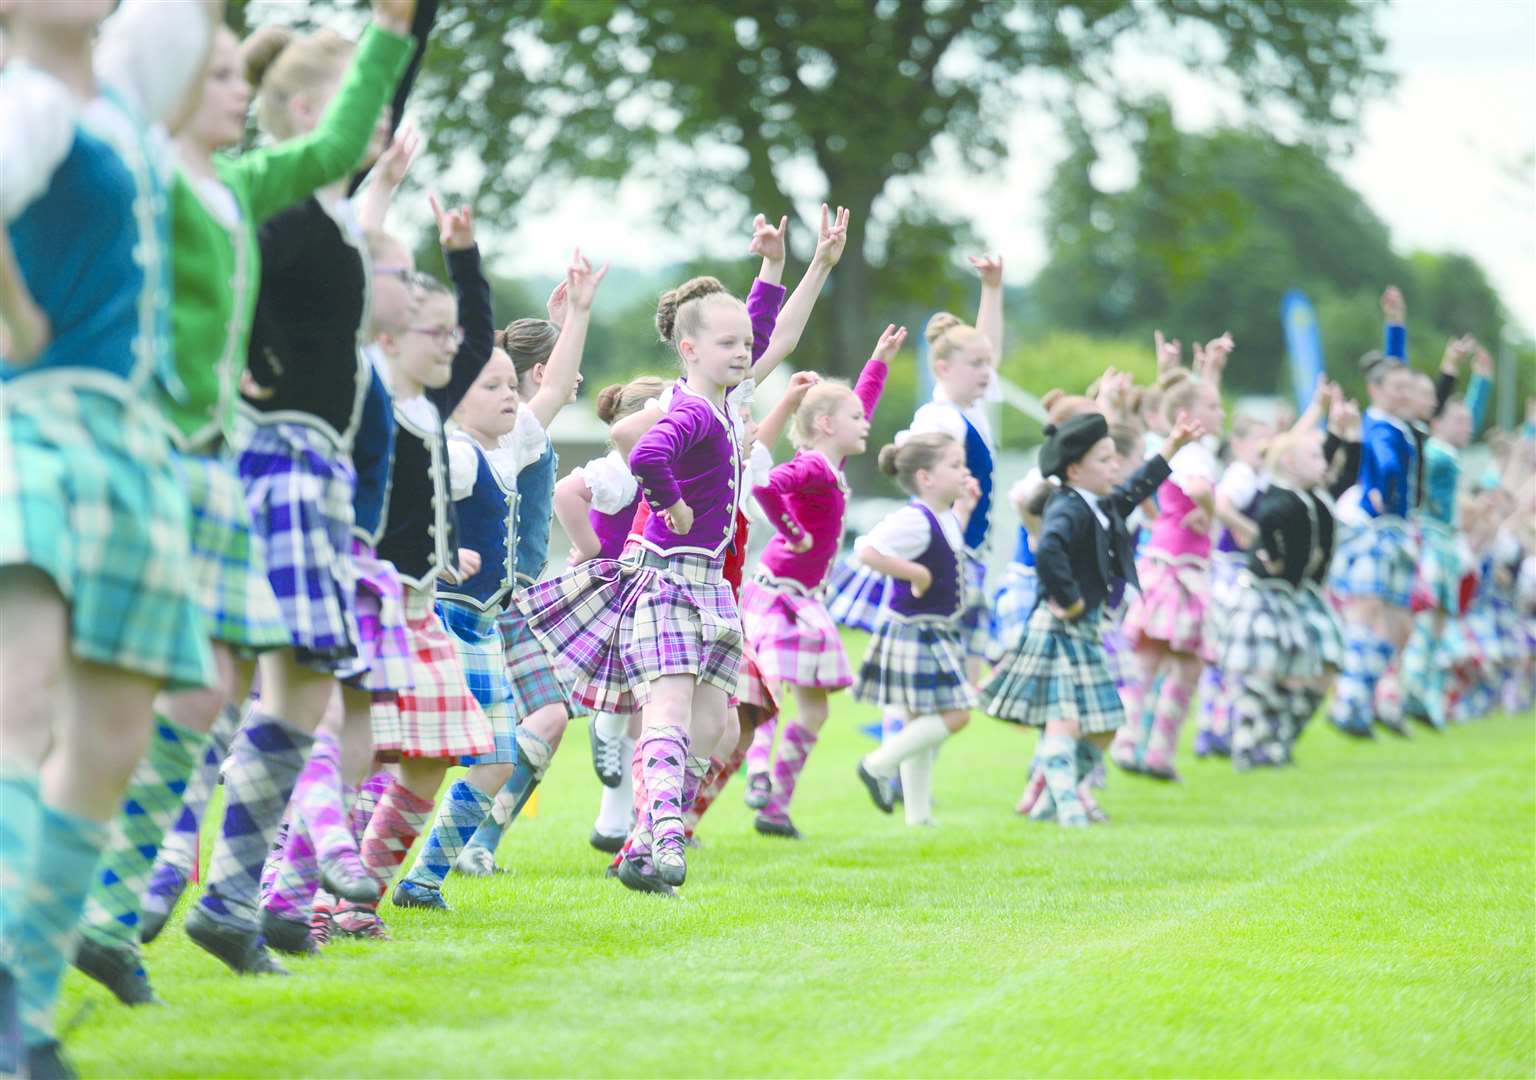 Inverness Highland Games 2018 at Bught Park. Elizabeth Fraser school of Highland Dance demonstrate Highland Fling. Picture: Gary Anthony